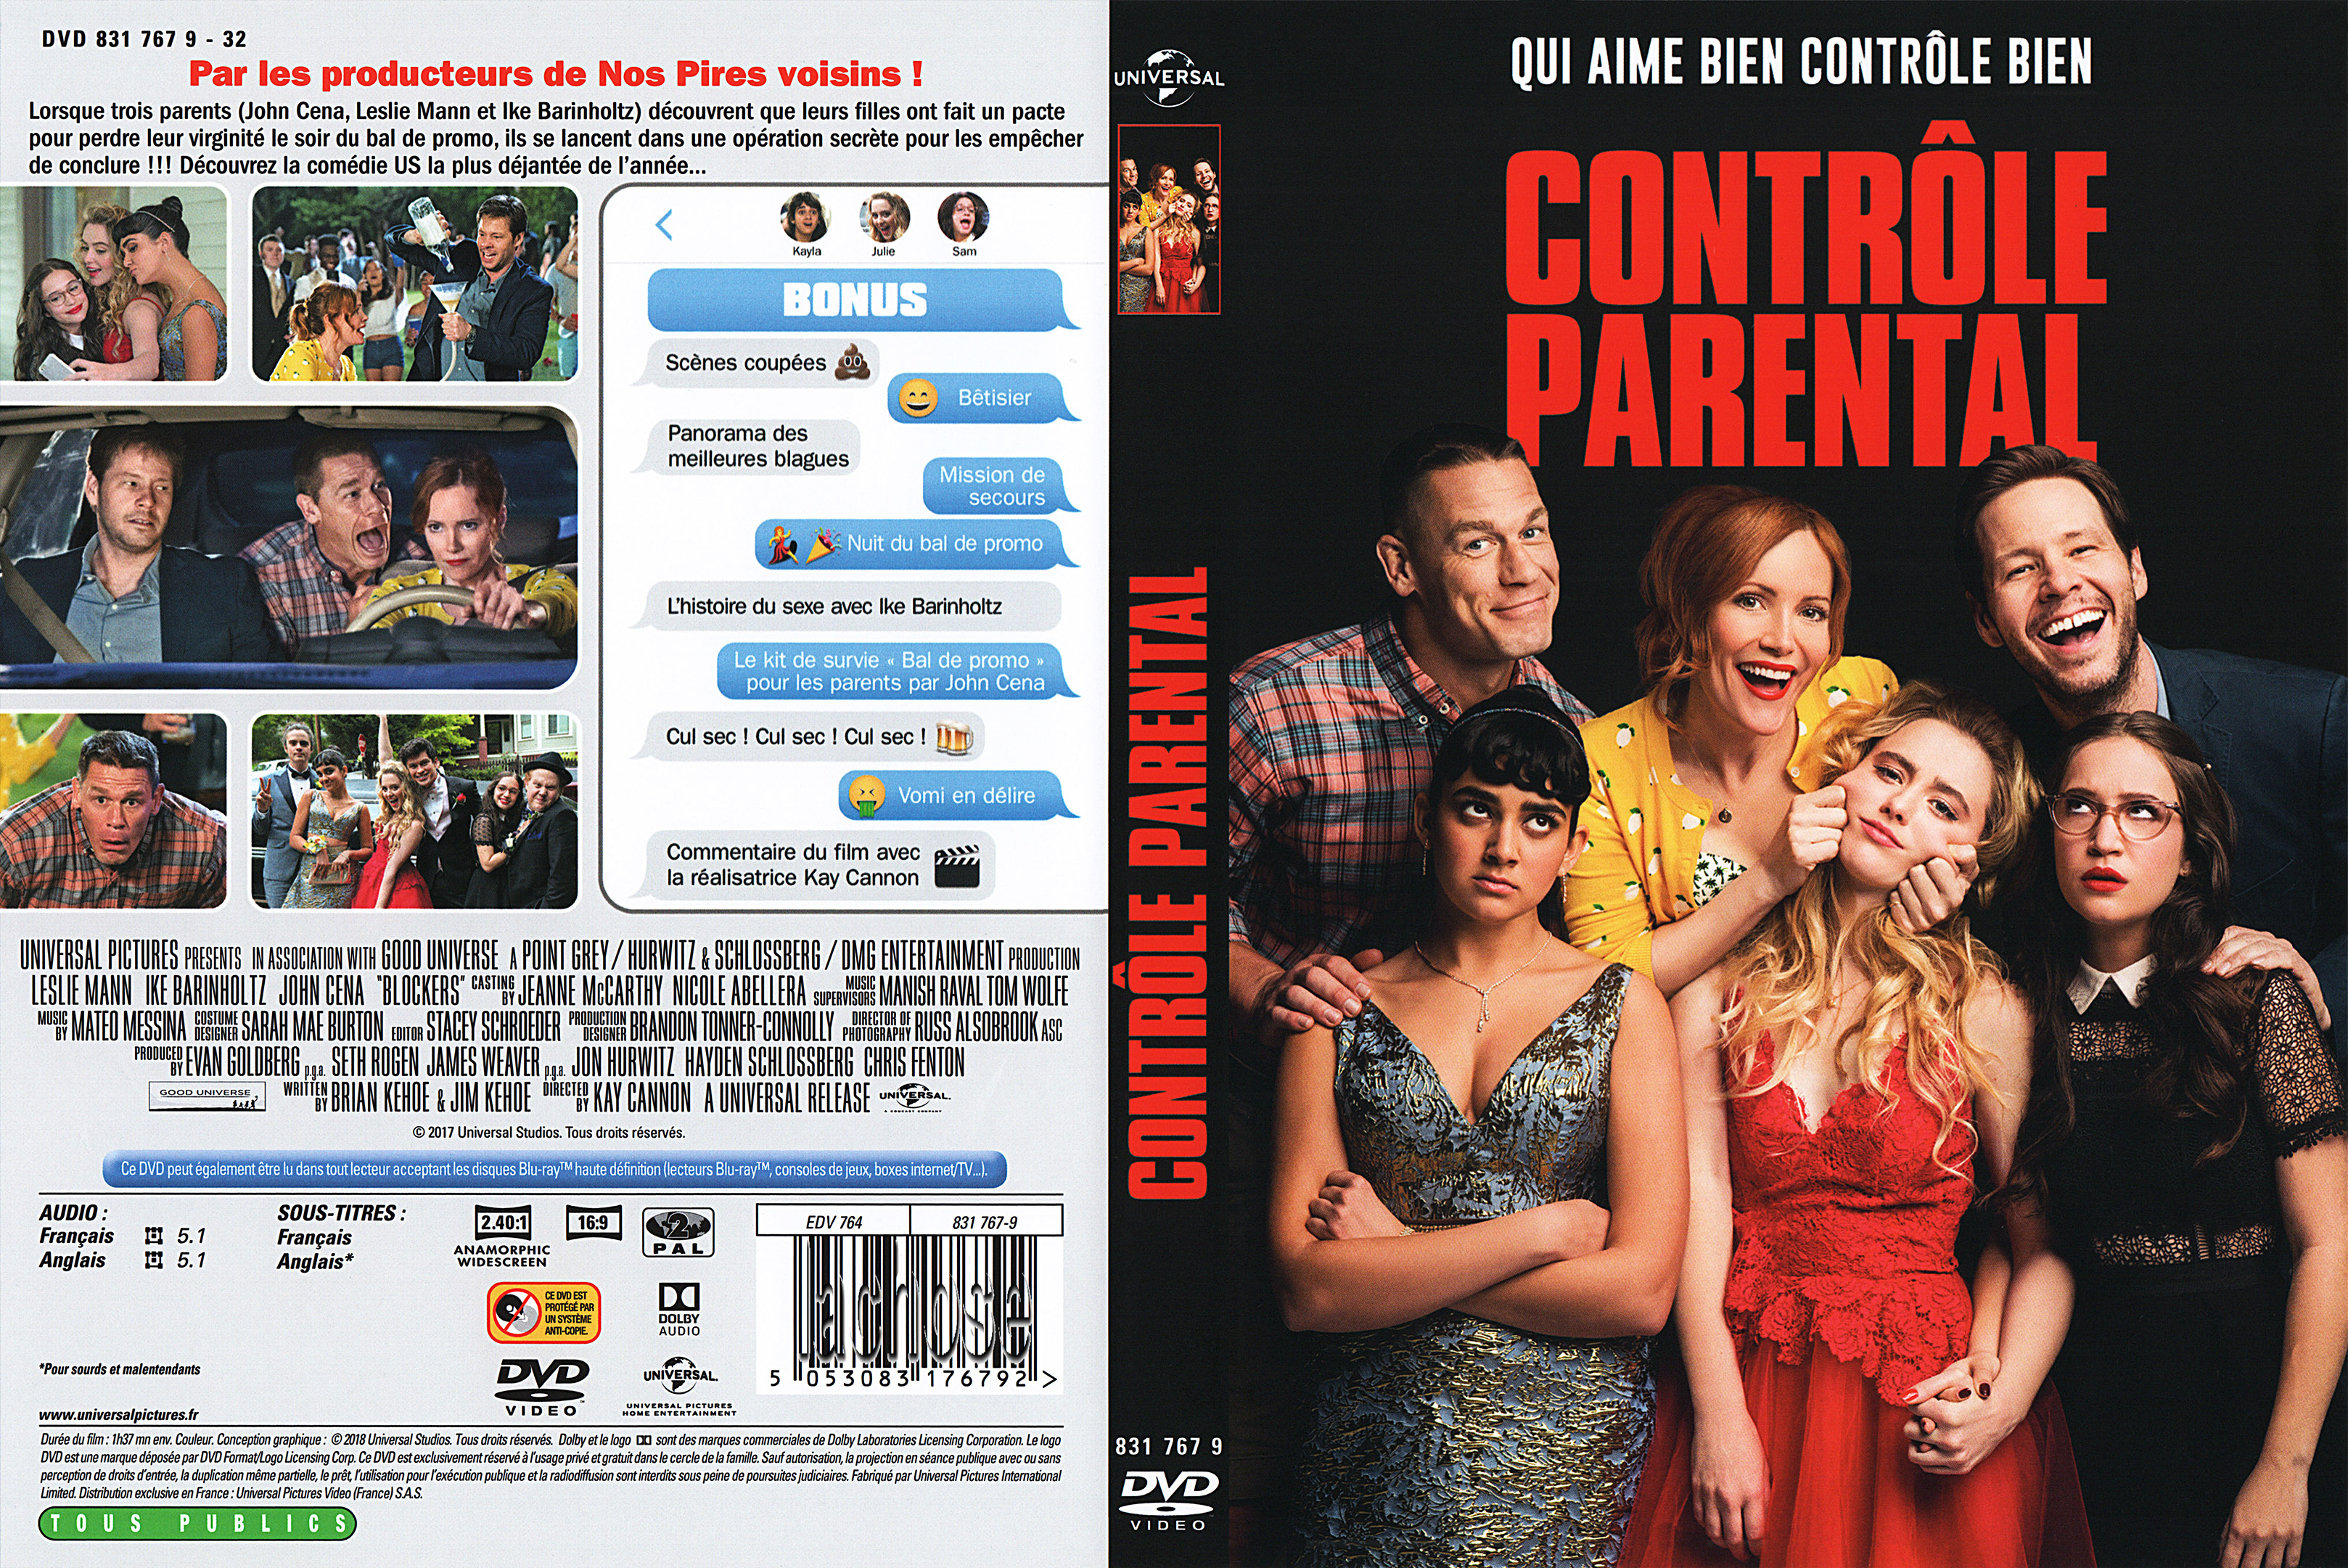 Jaquette DVD Contrle parental